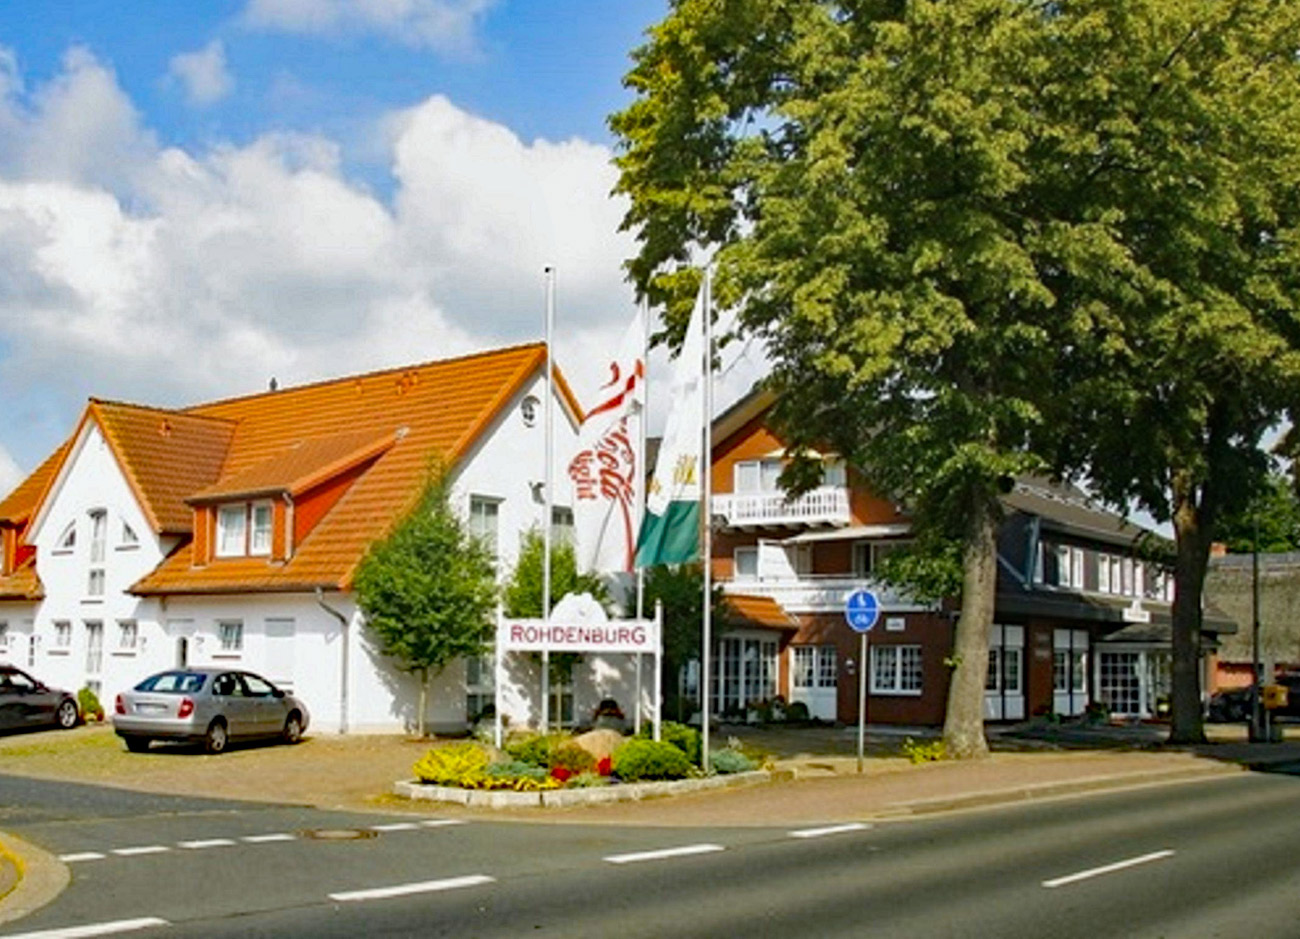 Hotel Rohdenburg in Lilienthal